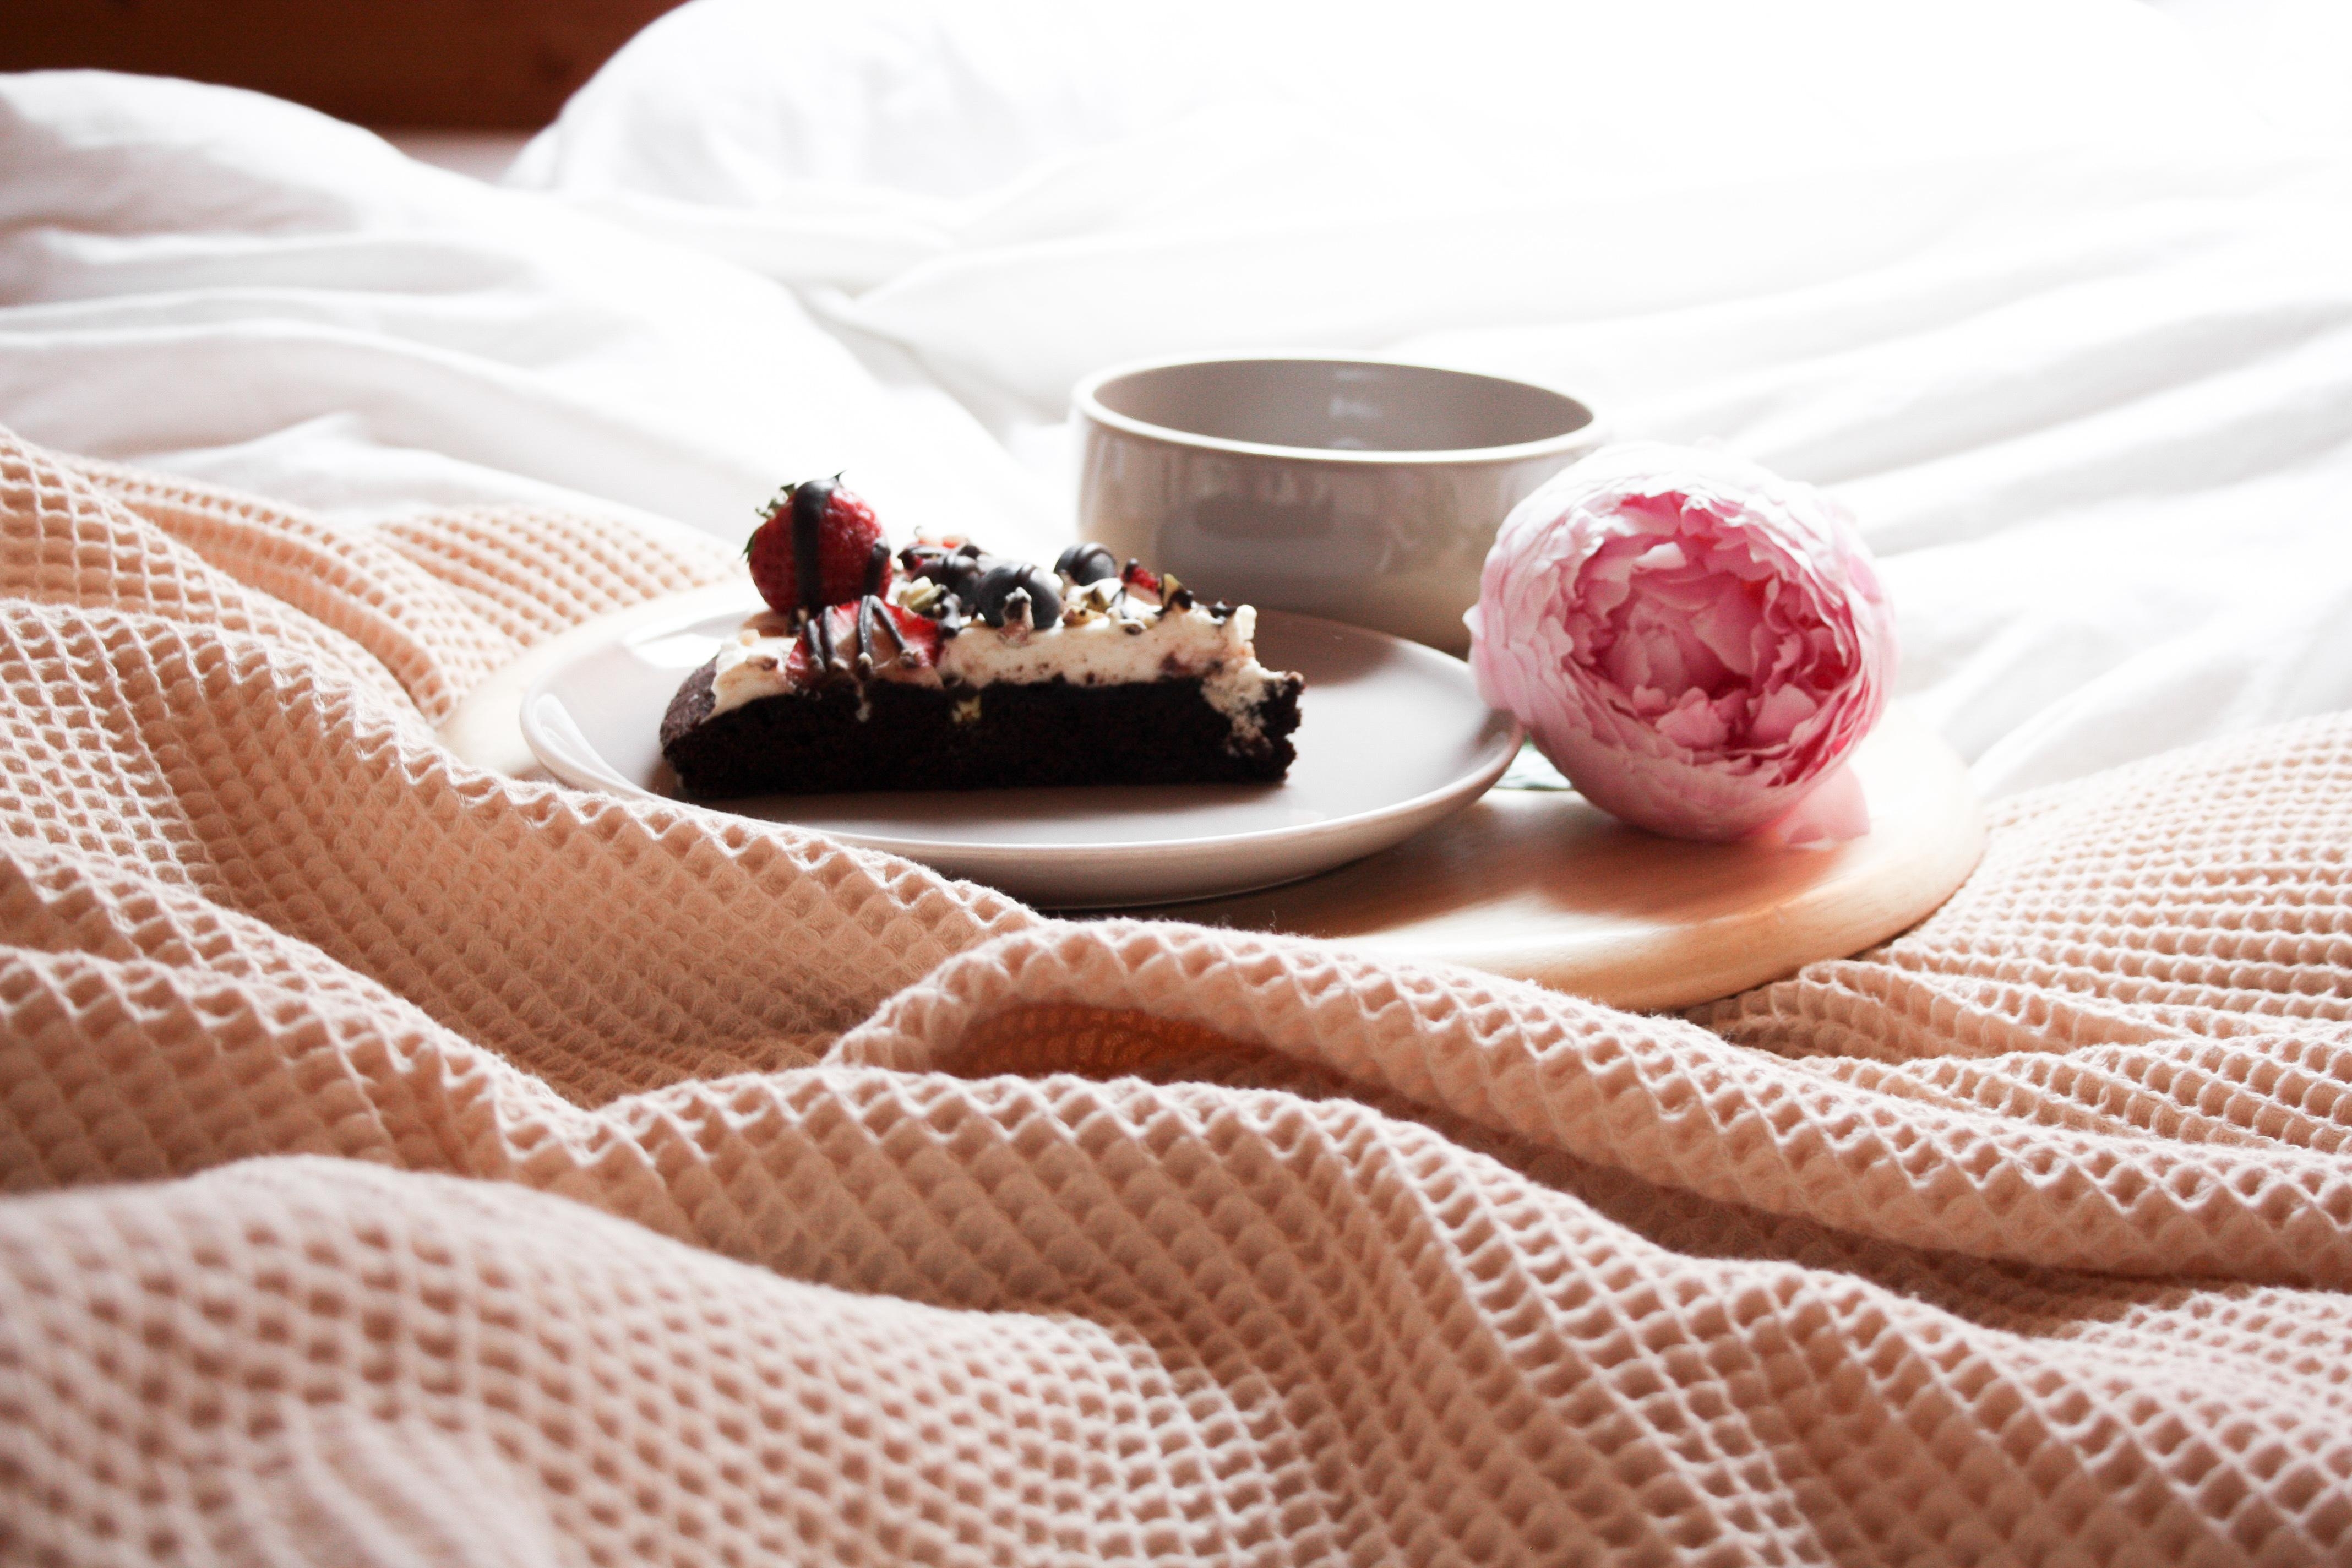 ♡ Guten Morgen ♡

#schlafzimmer #lieblingsplatz #coffee #frühstück #cake #backen 